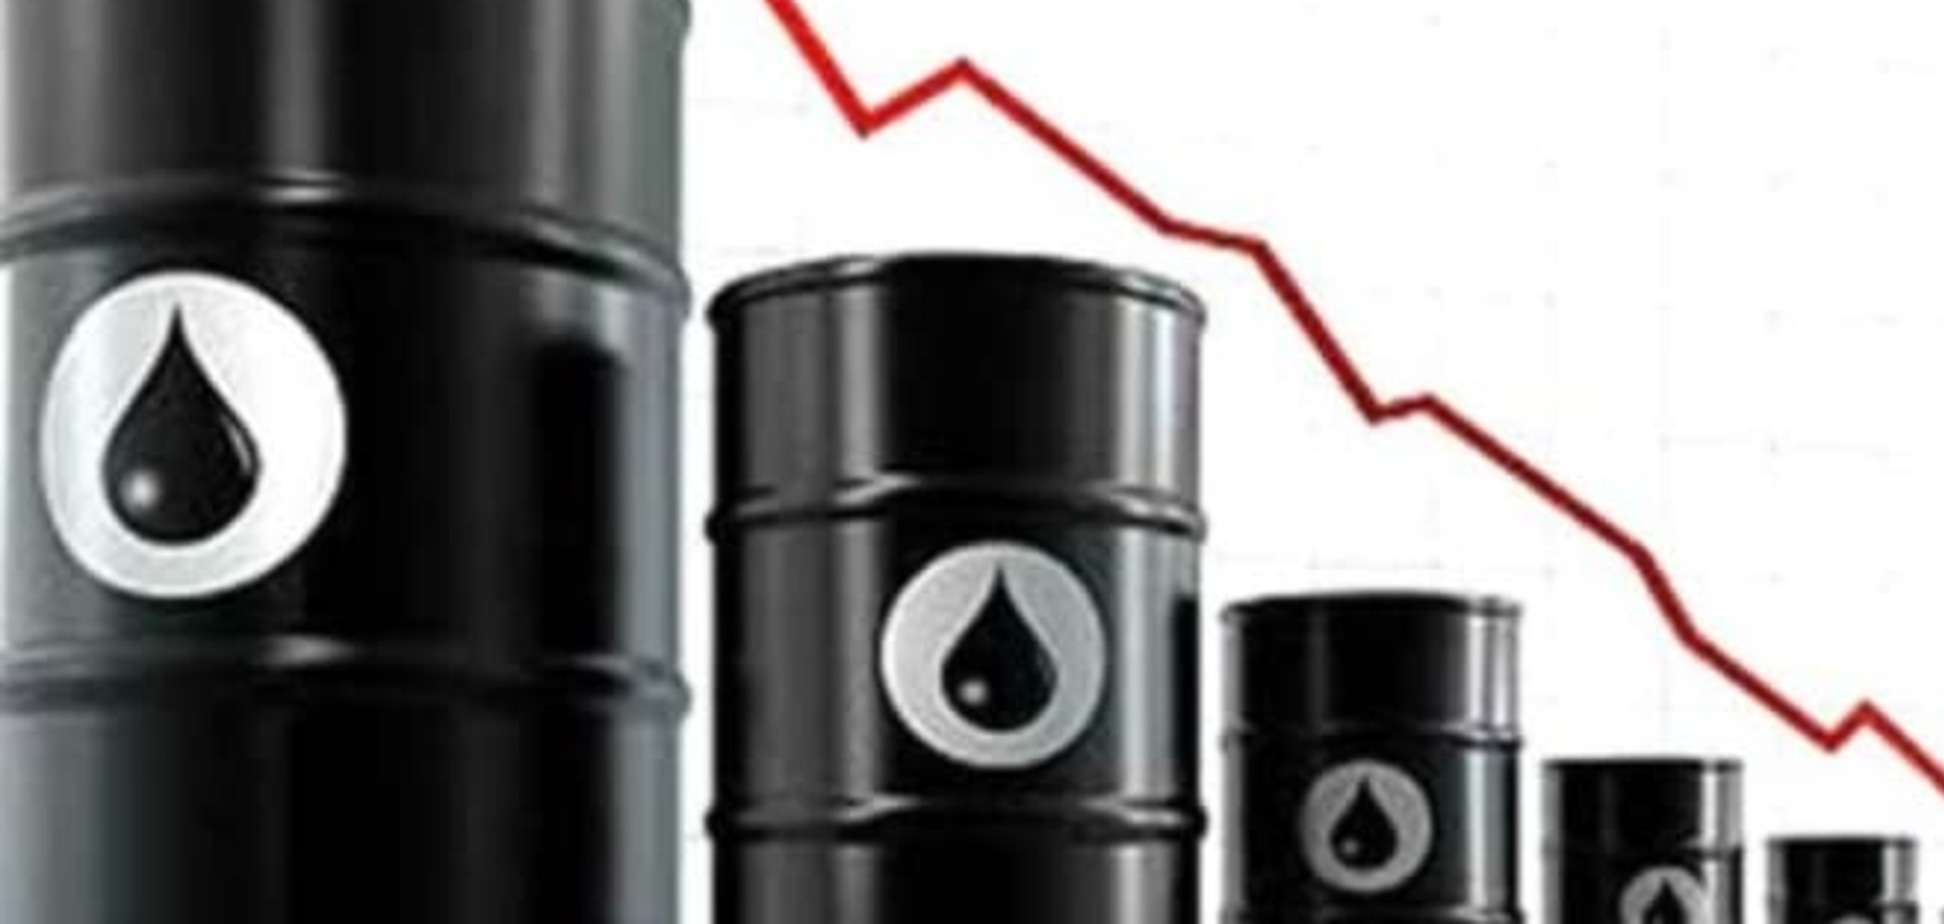 Прогнозы заставили цены на нефть падать уже седьмую неделю